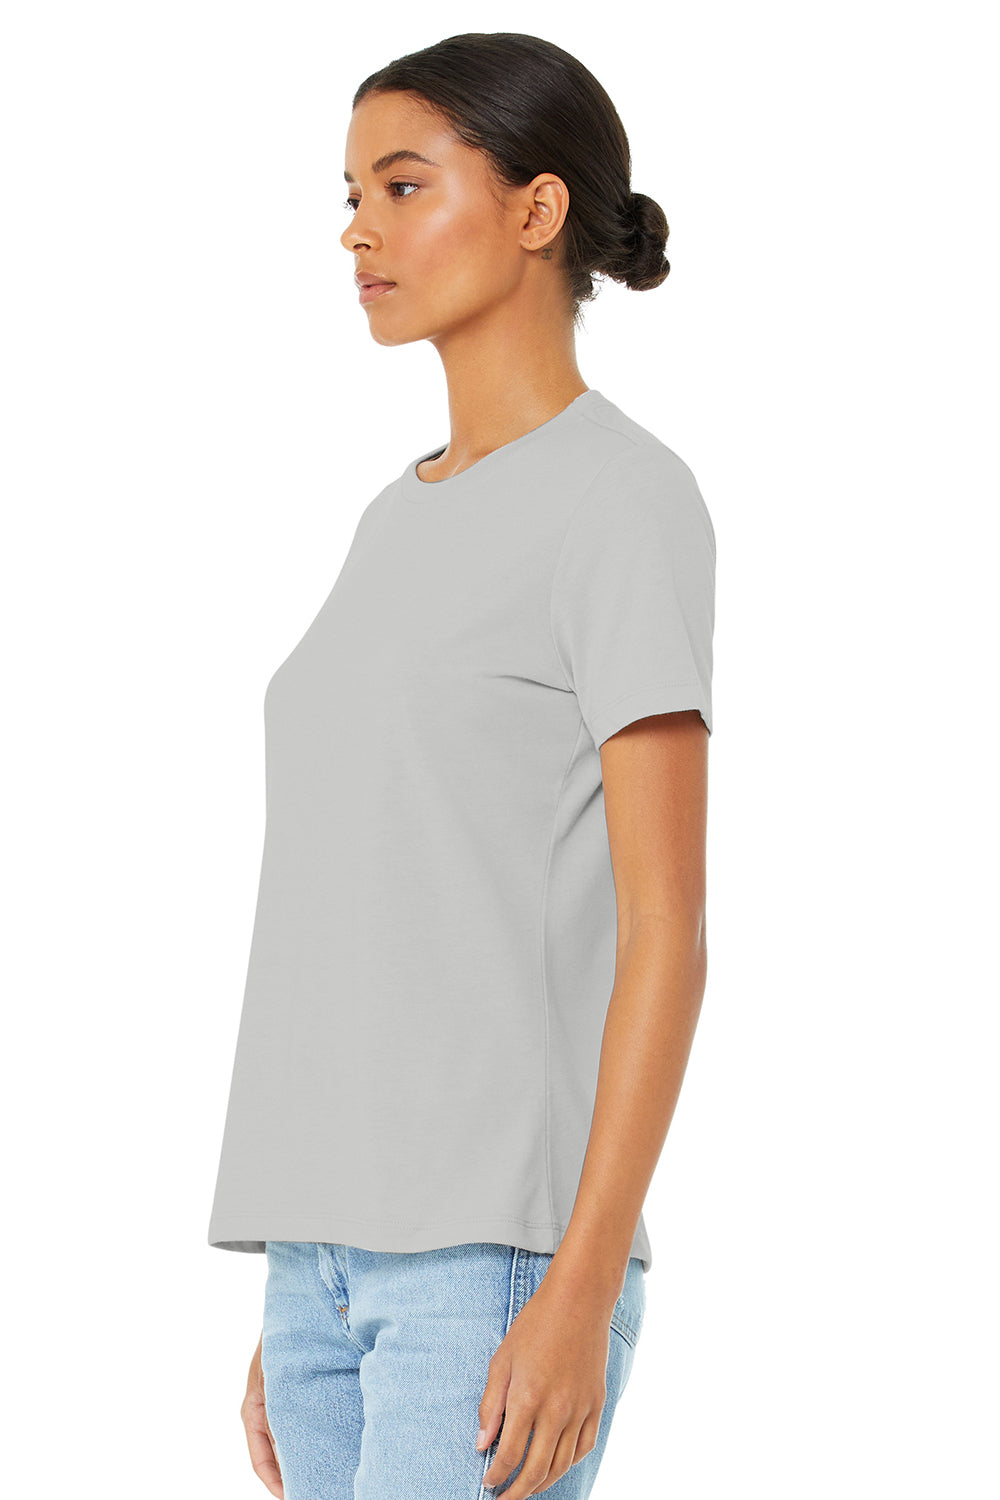 Bella + Canvas BC6400CVC/6400CVC Womens CVC Short Sleeve Crewneck T-Shirt Heather Silver Grey Flat Front